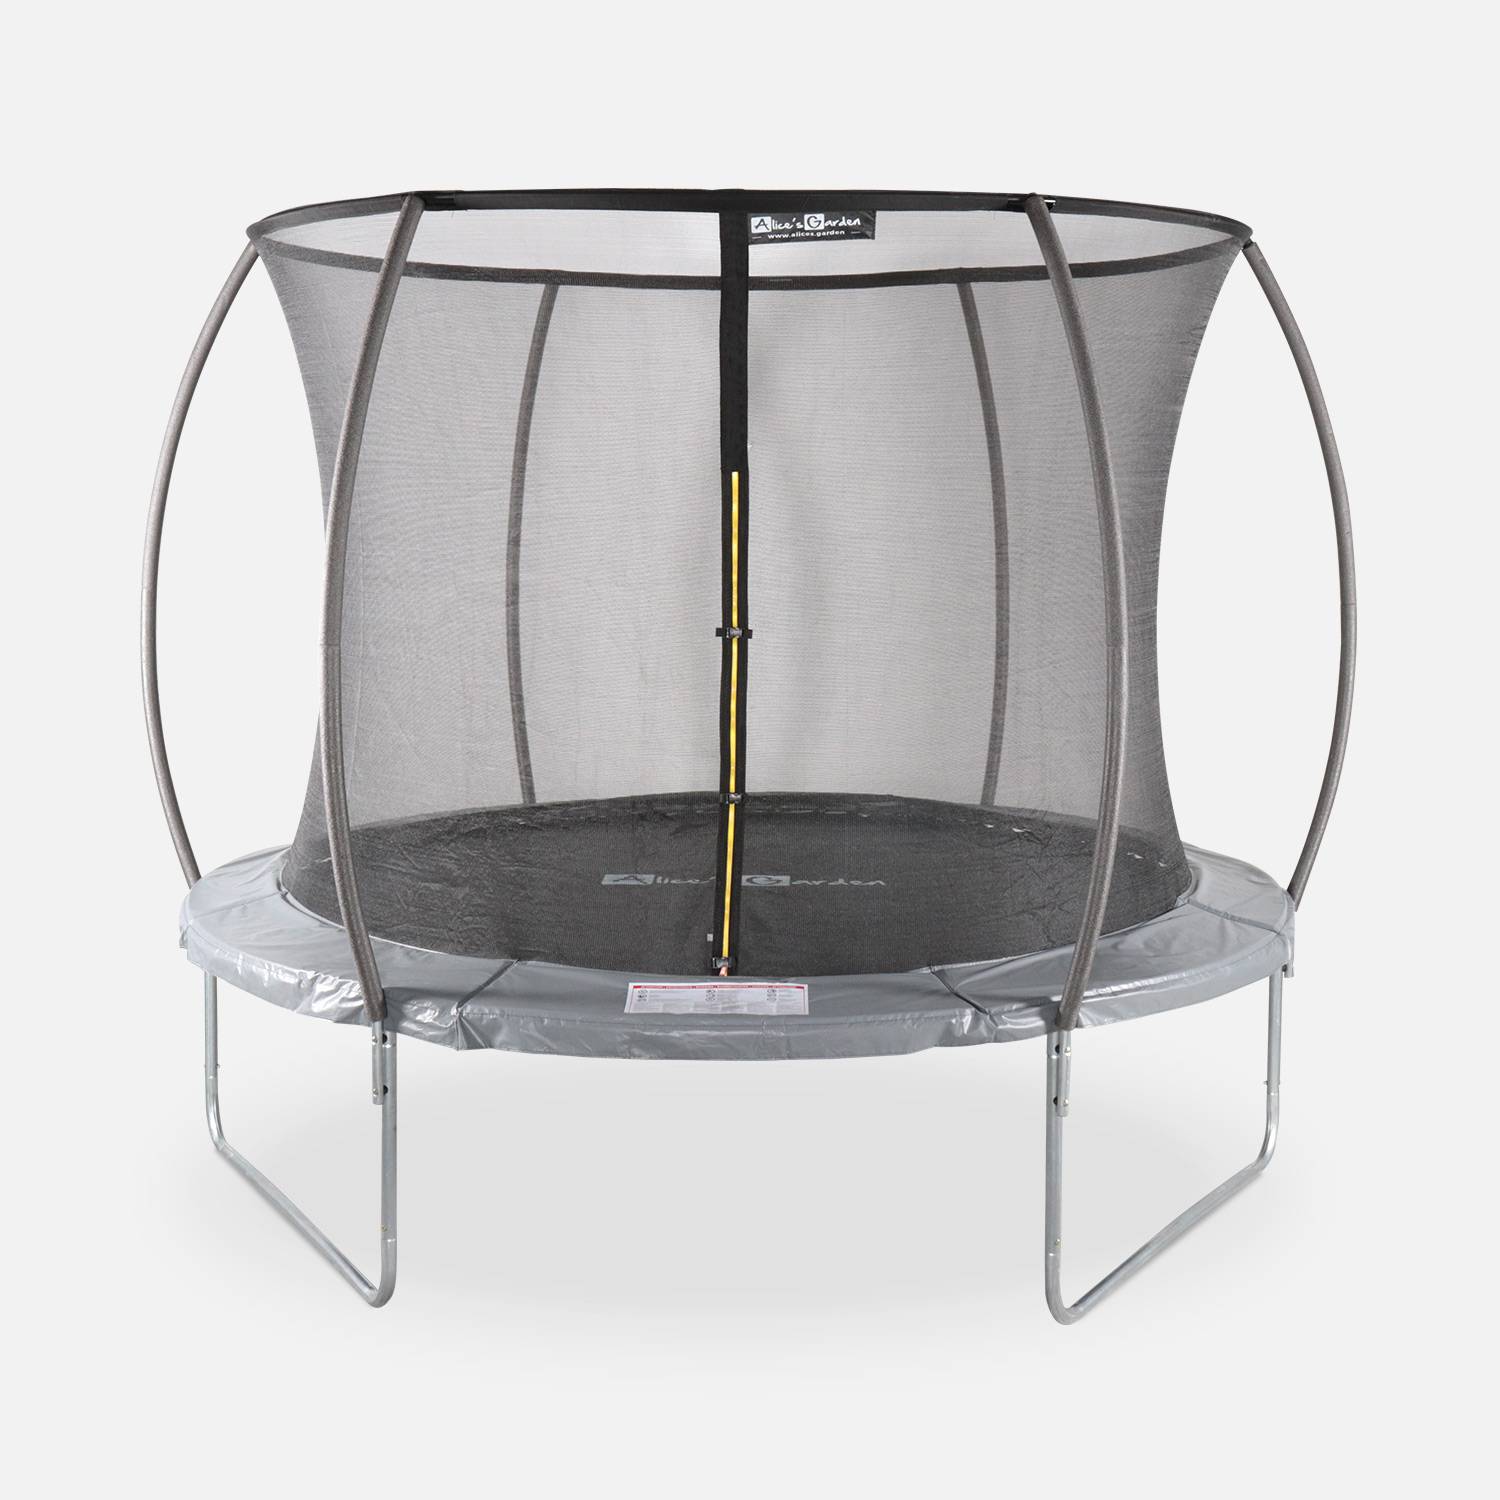 Trampoline rond Ø 305cm grijs met veiligheidsnet aan binnenzijde - Mars INNER – Nieuw model - trampoline voor tuin 3,05m 305 cm |Kwaliteit PRO. | EU Normen. Photo1